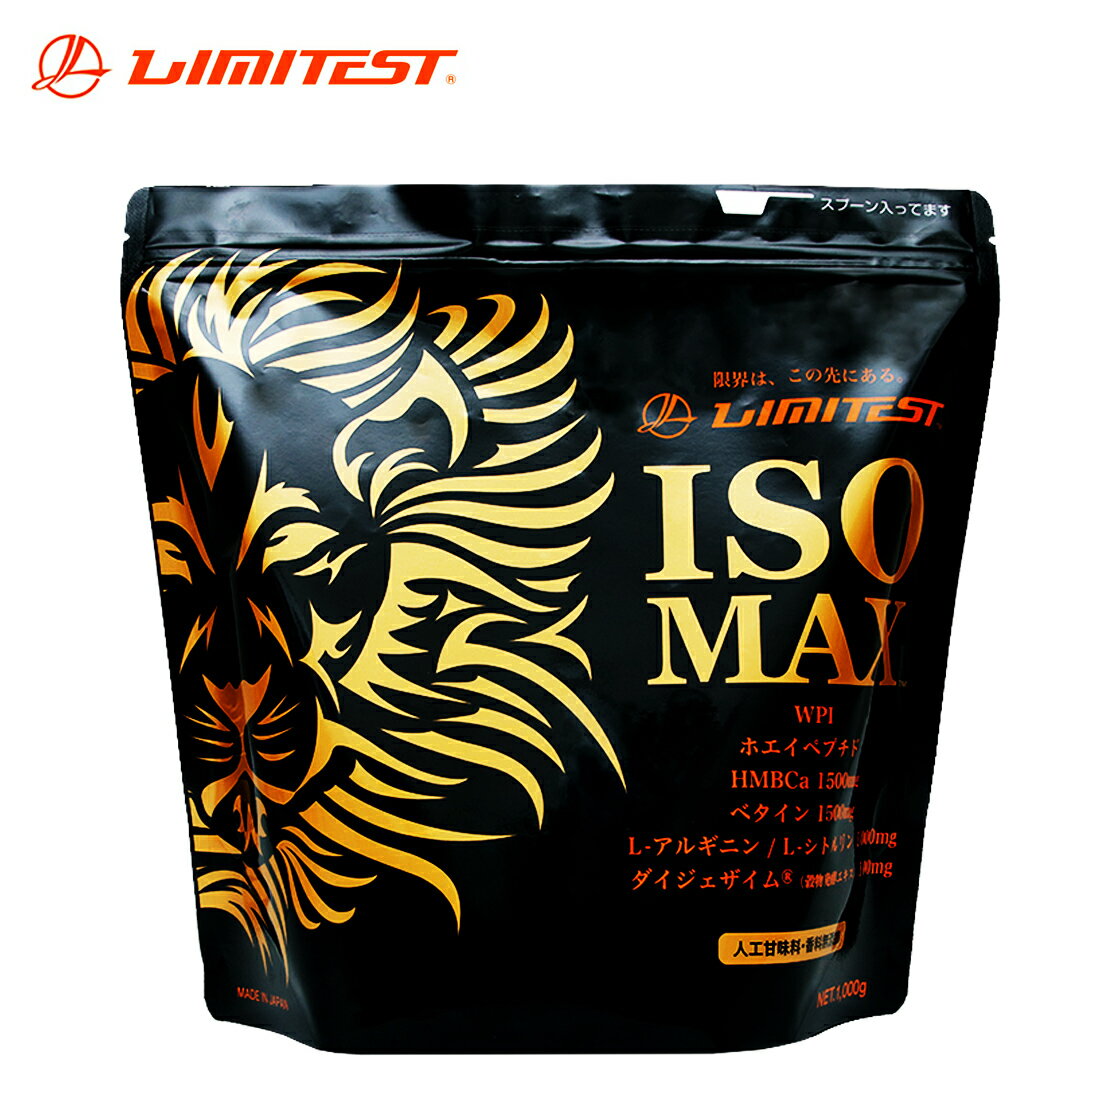 【まとめ買い】リミテスト ISOMAX 1kg×16個【ココア味/コーヒー味/抹茶味】プロテイン 筋トレ サプリ 筋肉ダイエット